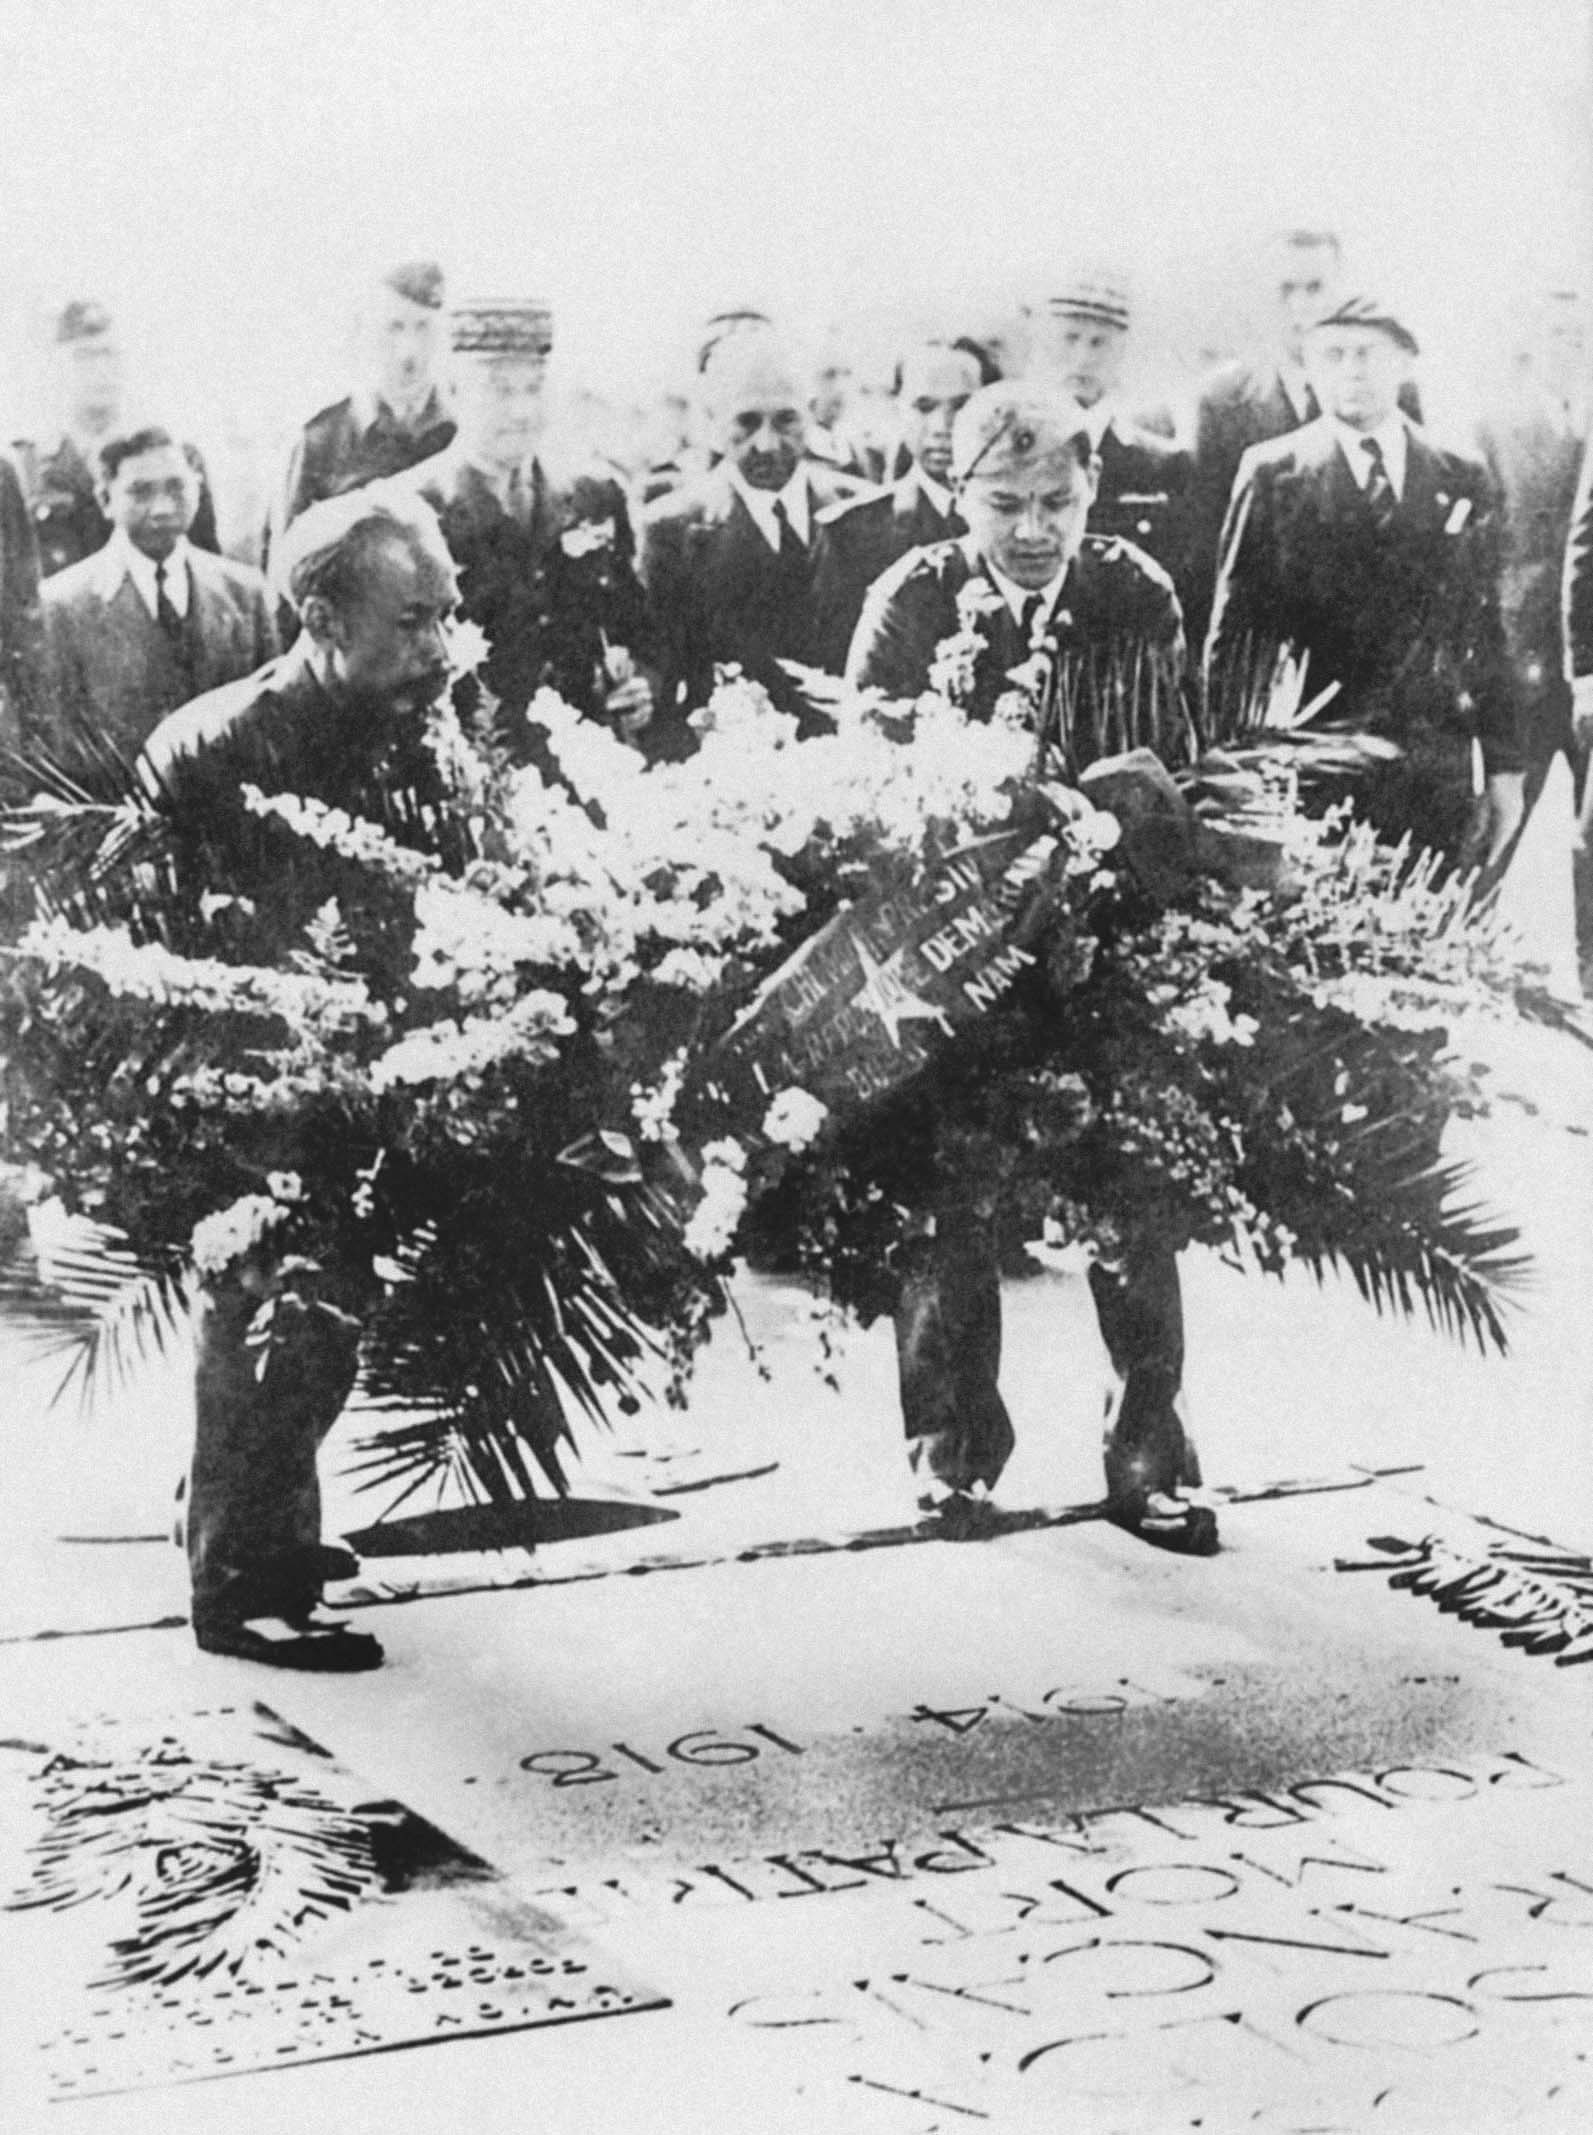 Chủ tịch Hồ Chí Minh đặt vòng hoa viếng các chiến sĩ đấu tranh vì nền độc lập, tự do của nước Pháp ở Khải Hoàn Môn, Pari, Pháp (6/1946)